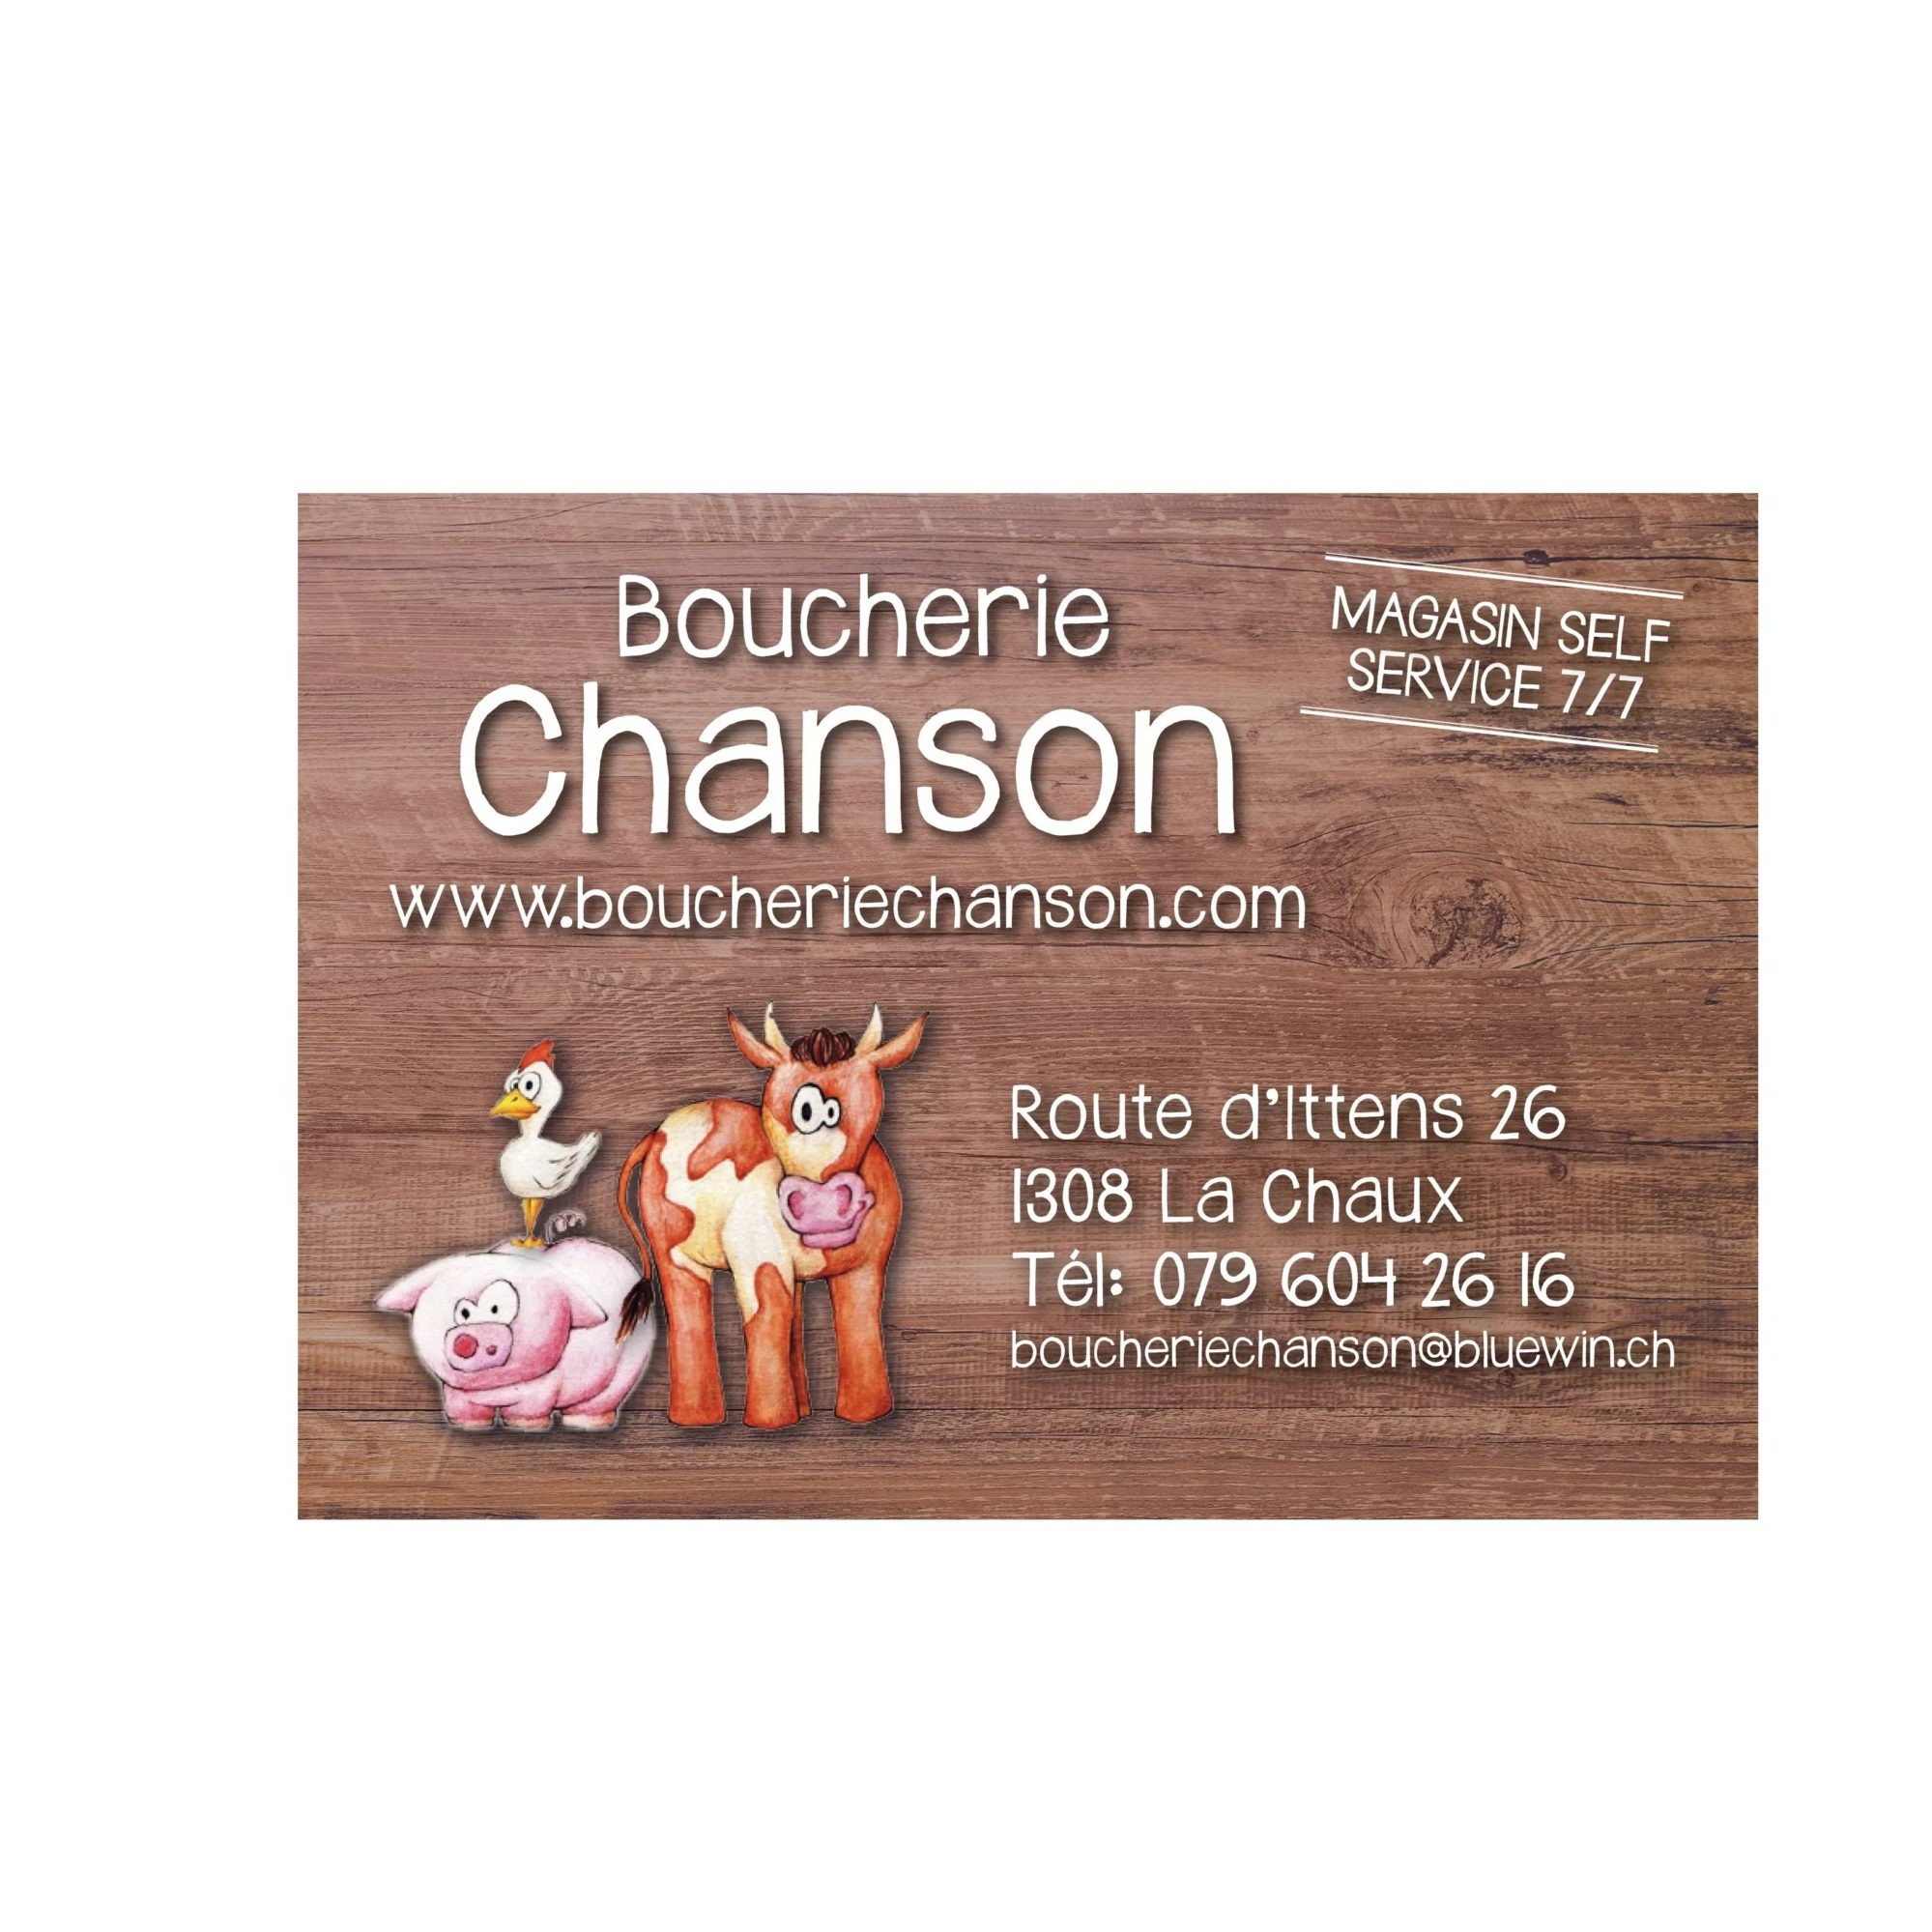 Boucherie Chanson de La Chaux